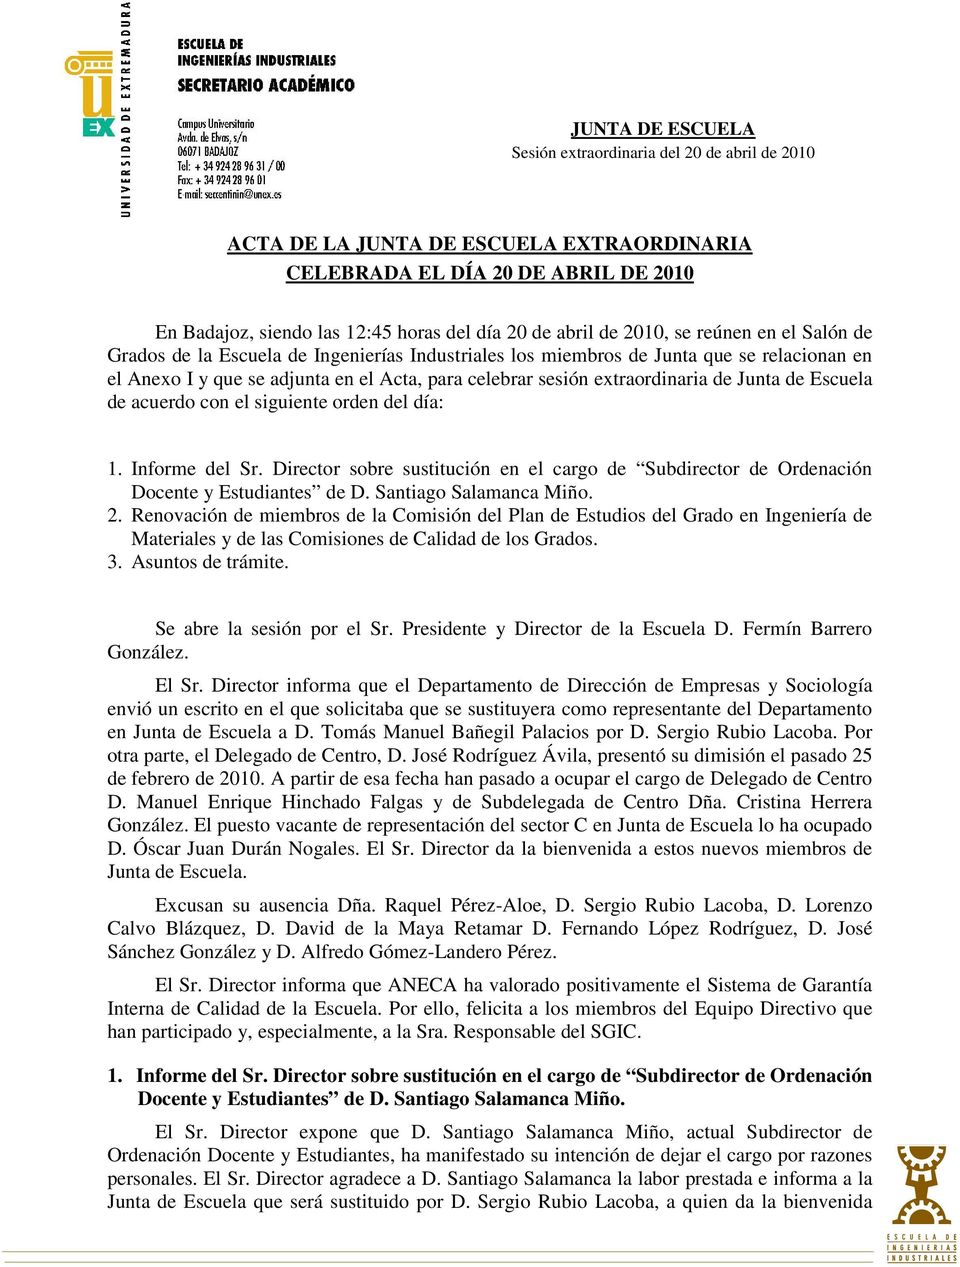 del día: 1. Informe del Sr. Director sobre sustitución en el cargo de Subdirector de Ordenación Docente y Estudiantes de D. Santiago Salamanca Miño. 2.